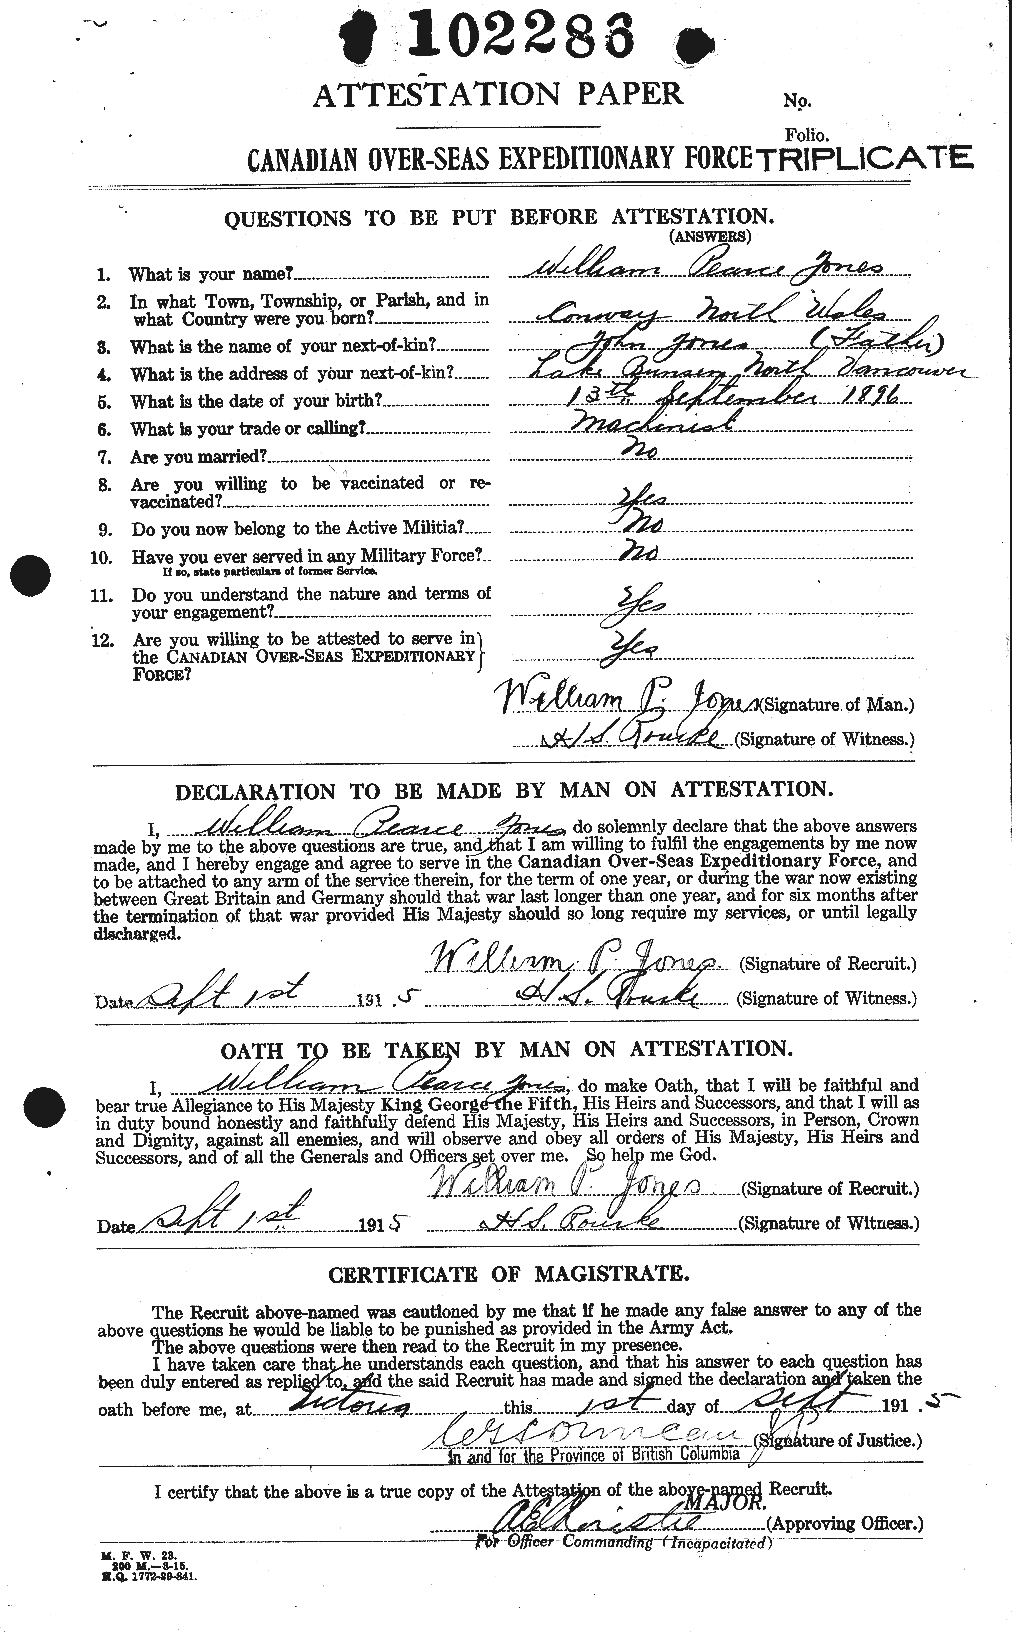 Dossiers du Personnel de la Première Guerre mondiale - CEC 428605a